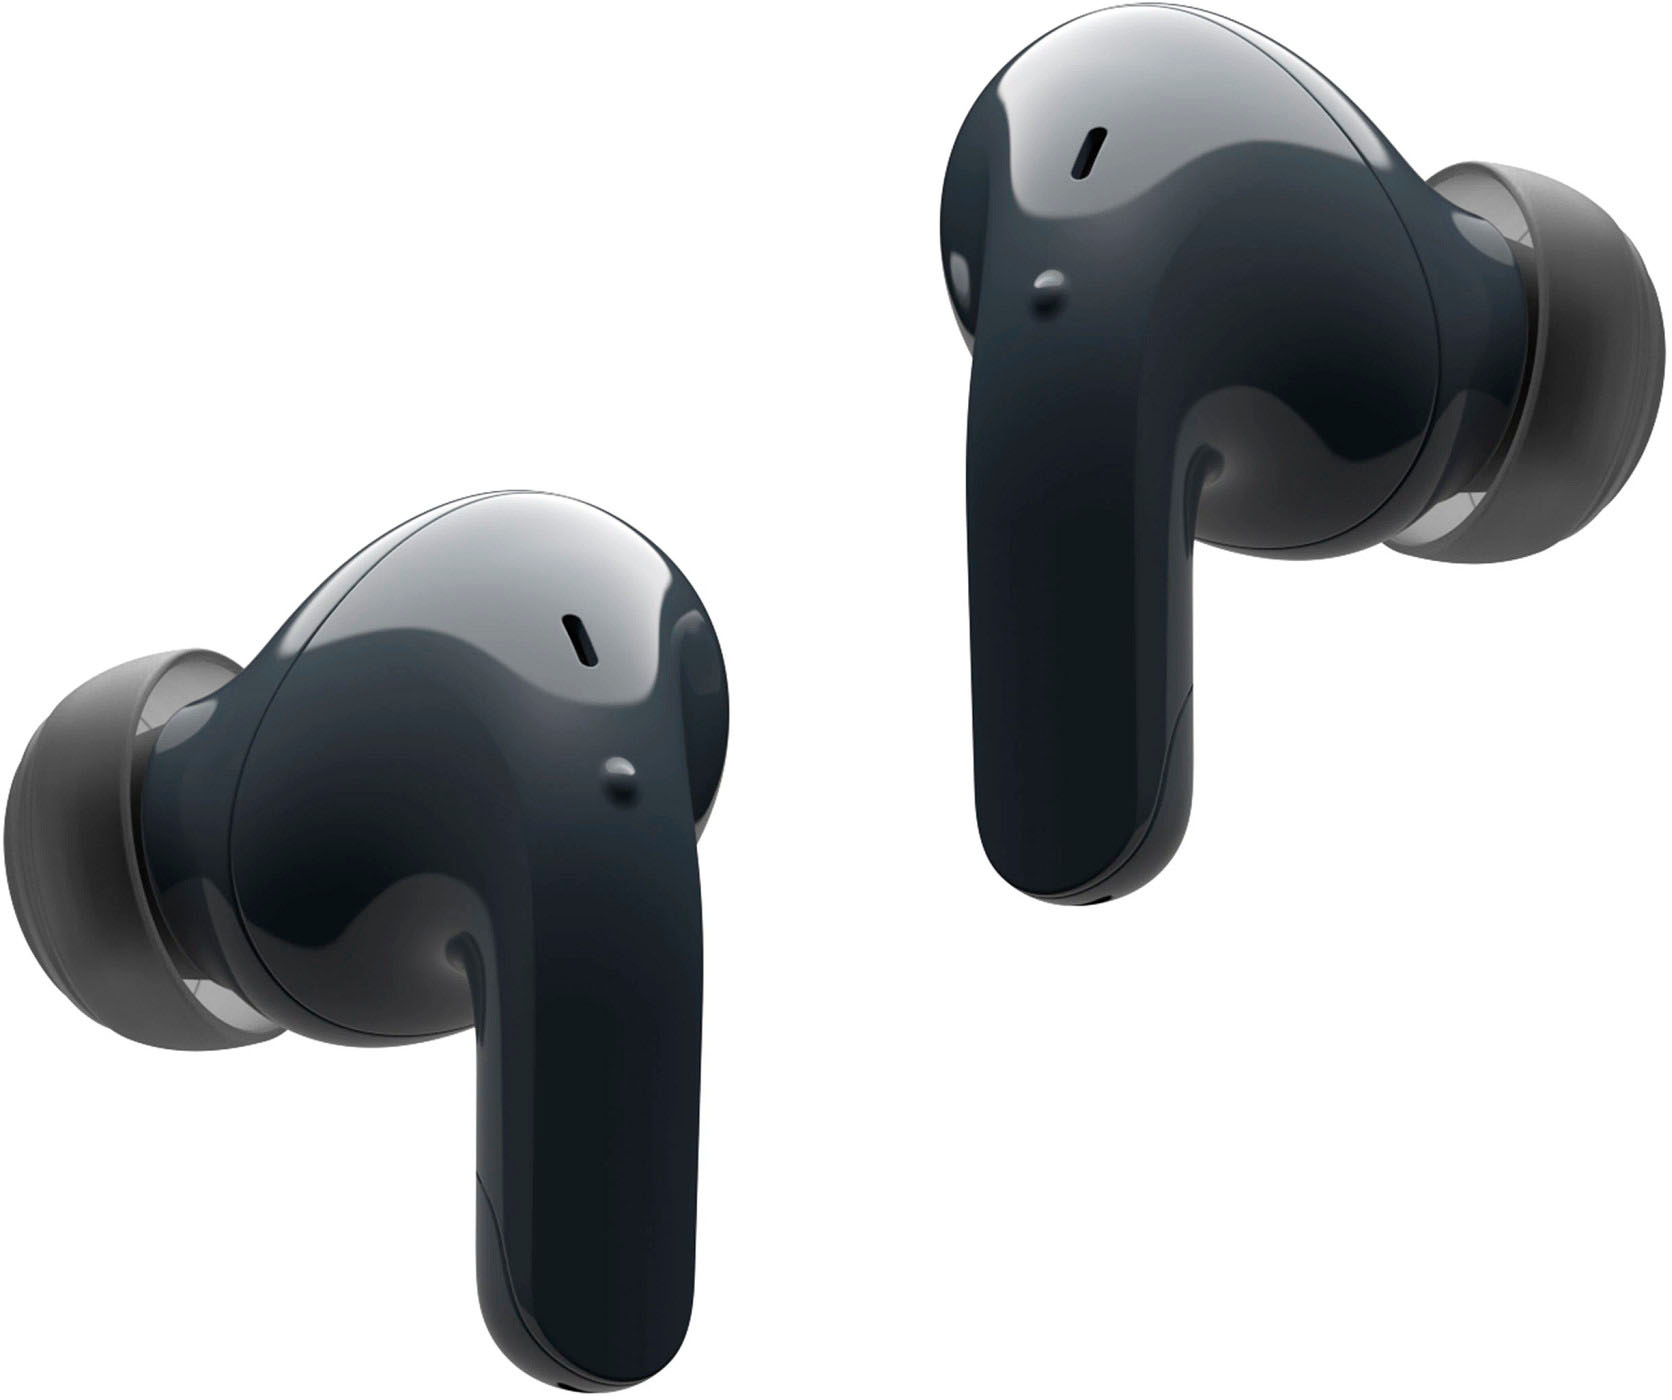 LG TONE Free - Noise Buy Cancelling In-Ear Black True Wireless Earbuds T90Q Best T90Q